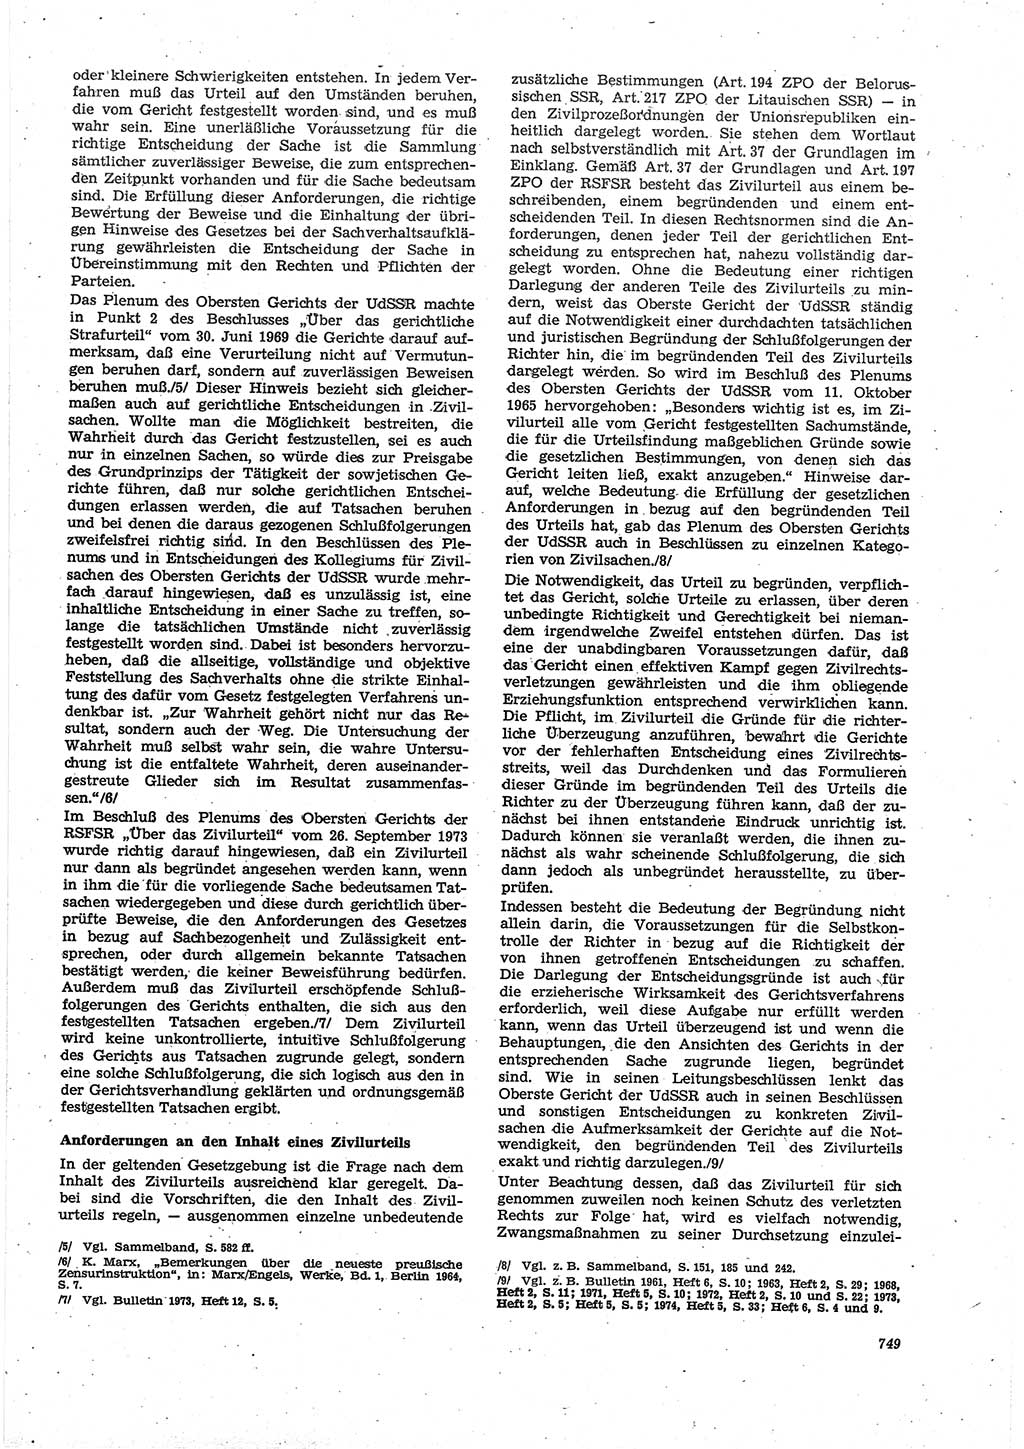 Neue Justiz (NJ), Zeitschrift für Recht und Rechtswissenschaft [Deutsche Demokratische Republik (DDR)], 30. Jahrgang 1976, Seite 749 (NJ DDR 1976, S. 749)